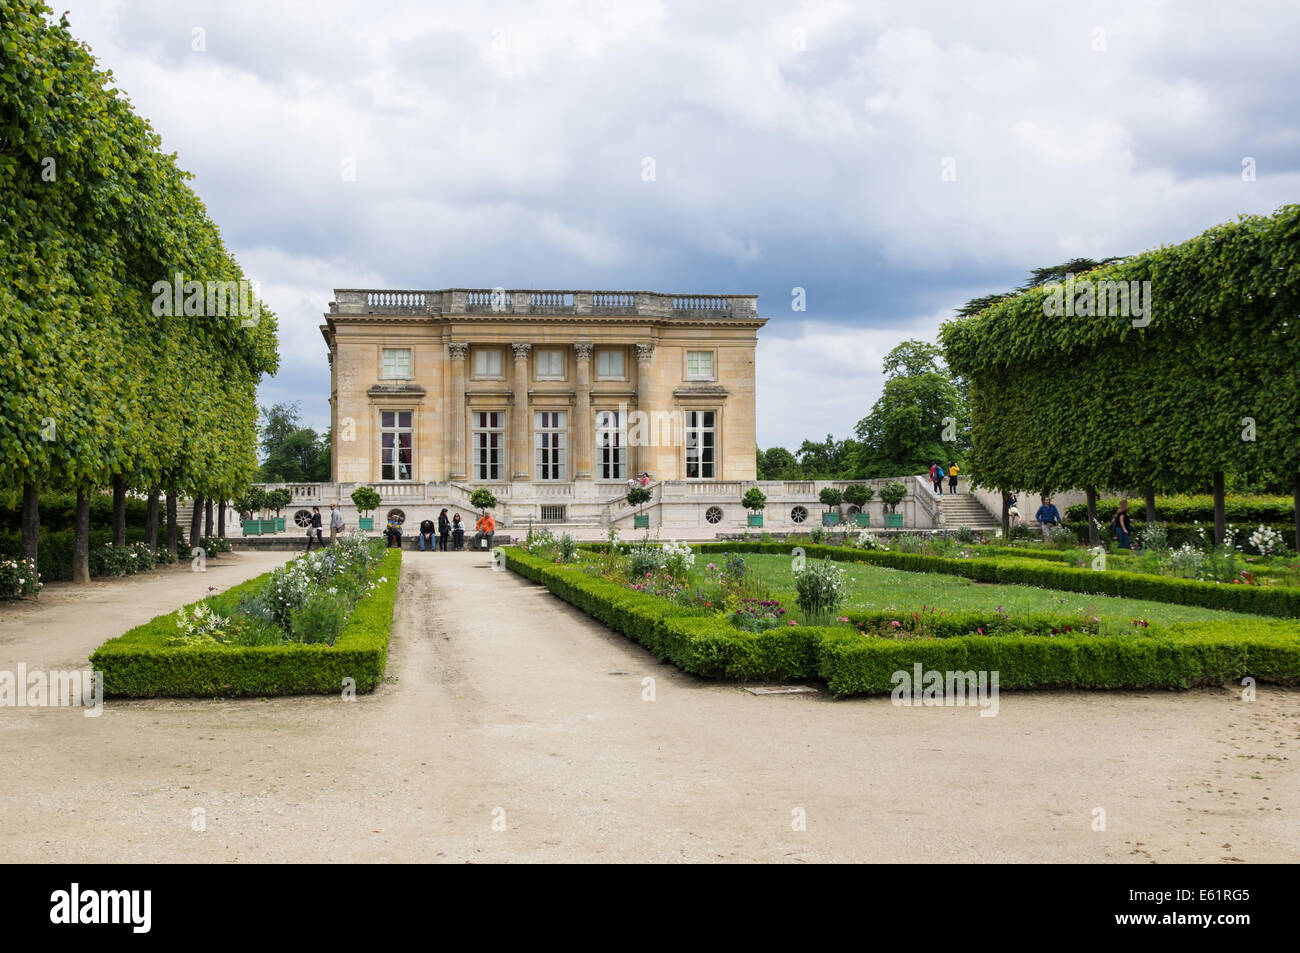 Petit Trianon Chateau sui terreni della Reggia di Versailles, Chateau de Versailles in Francia Foto Stock